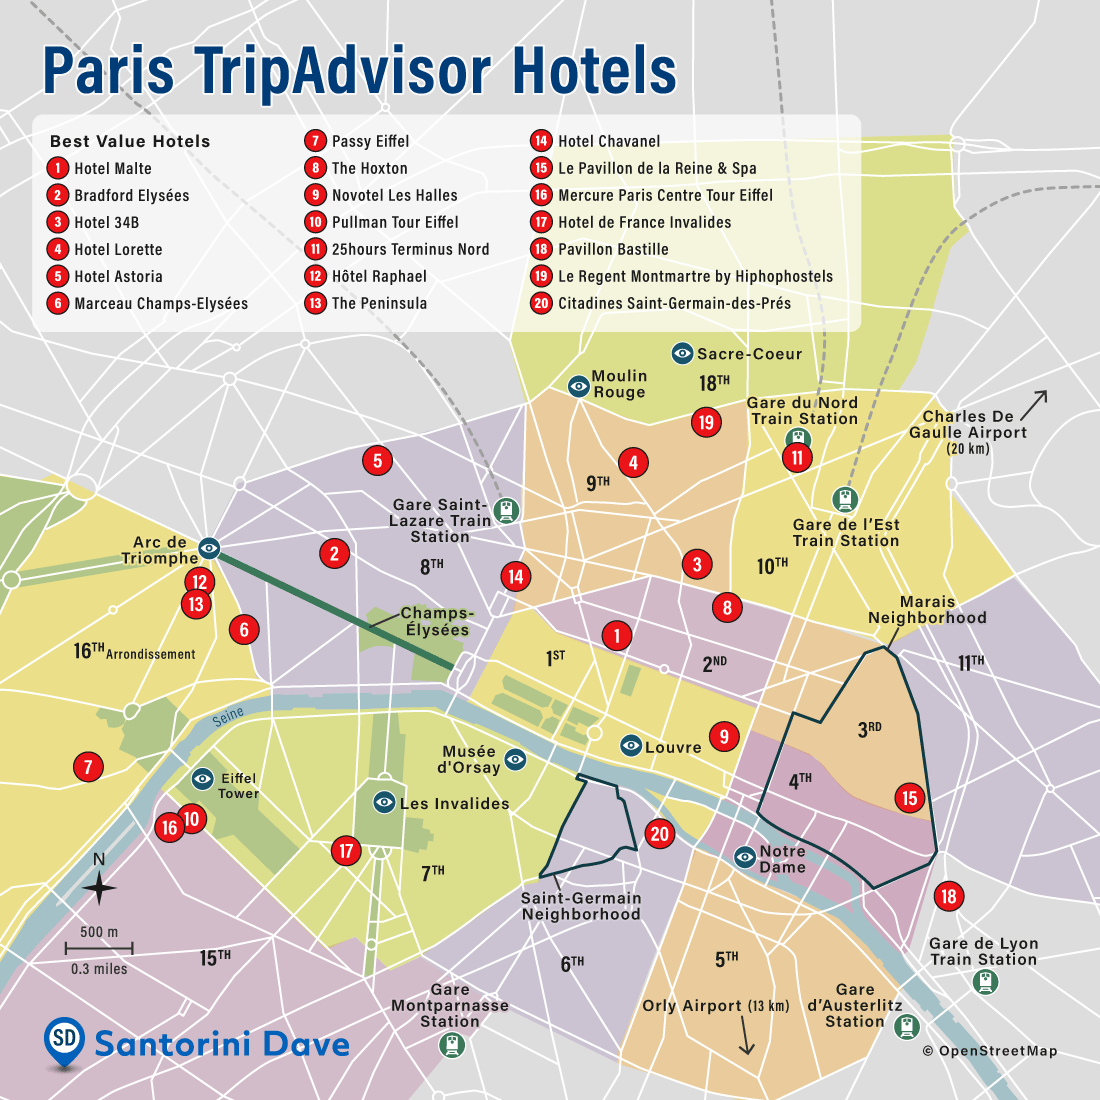 Paris TripAdvisor Hotels